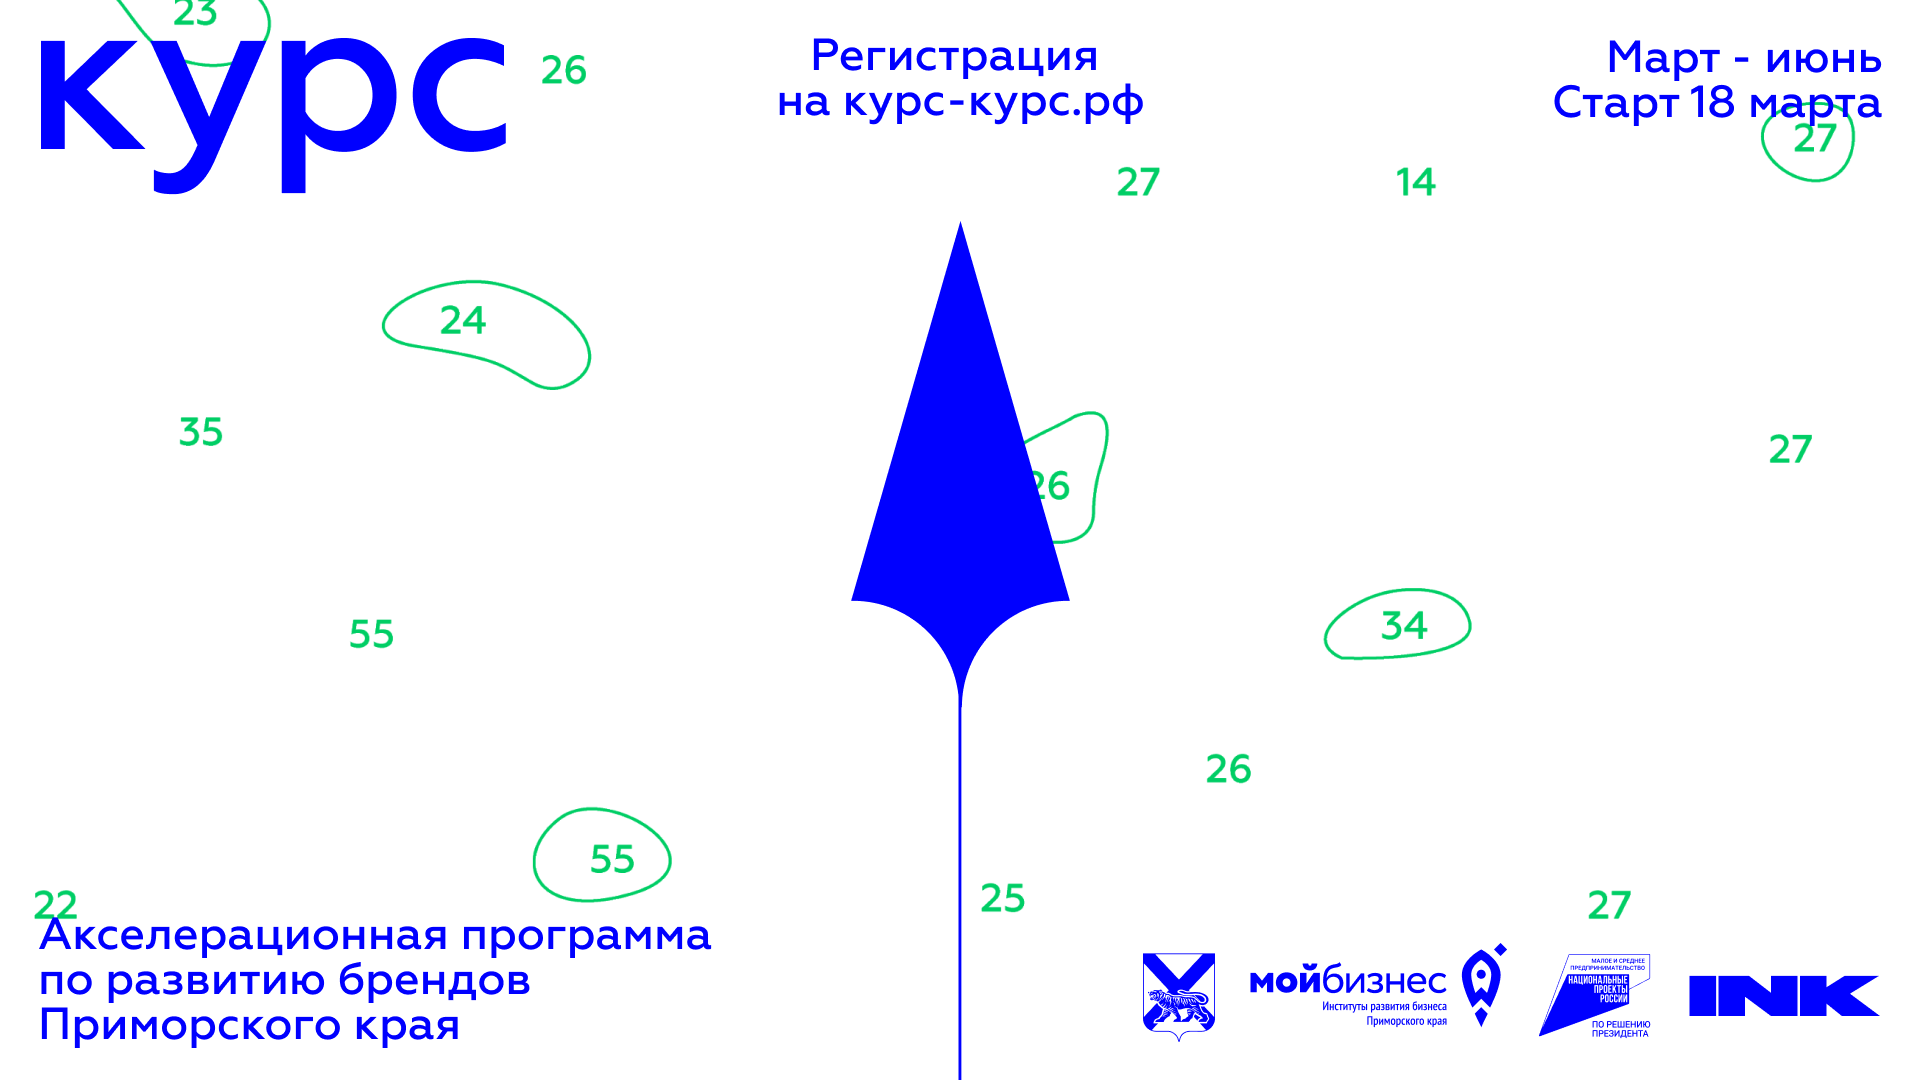 Предпринимателей приглашают принять участие в акселерационной программе по развитию брендов Приморского края «КУРС».